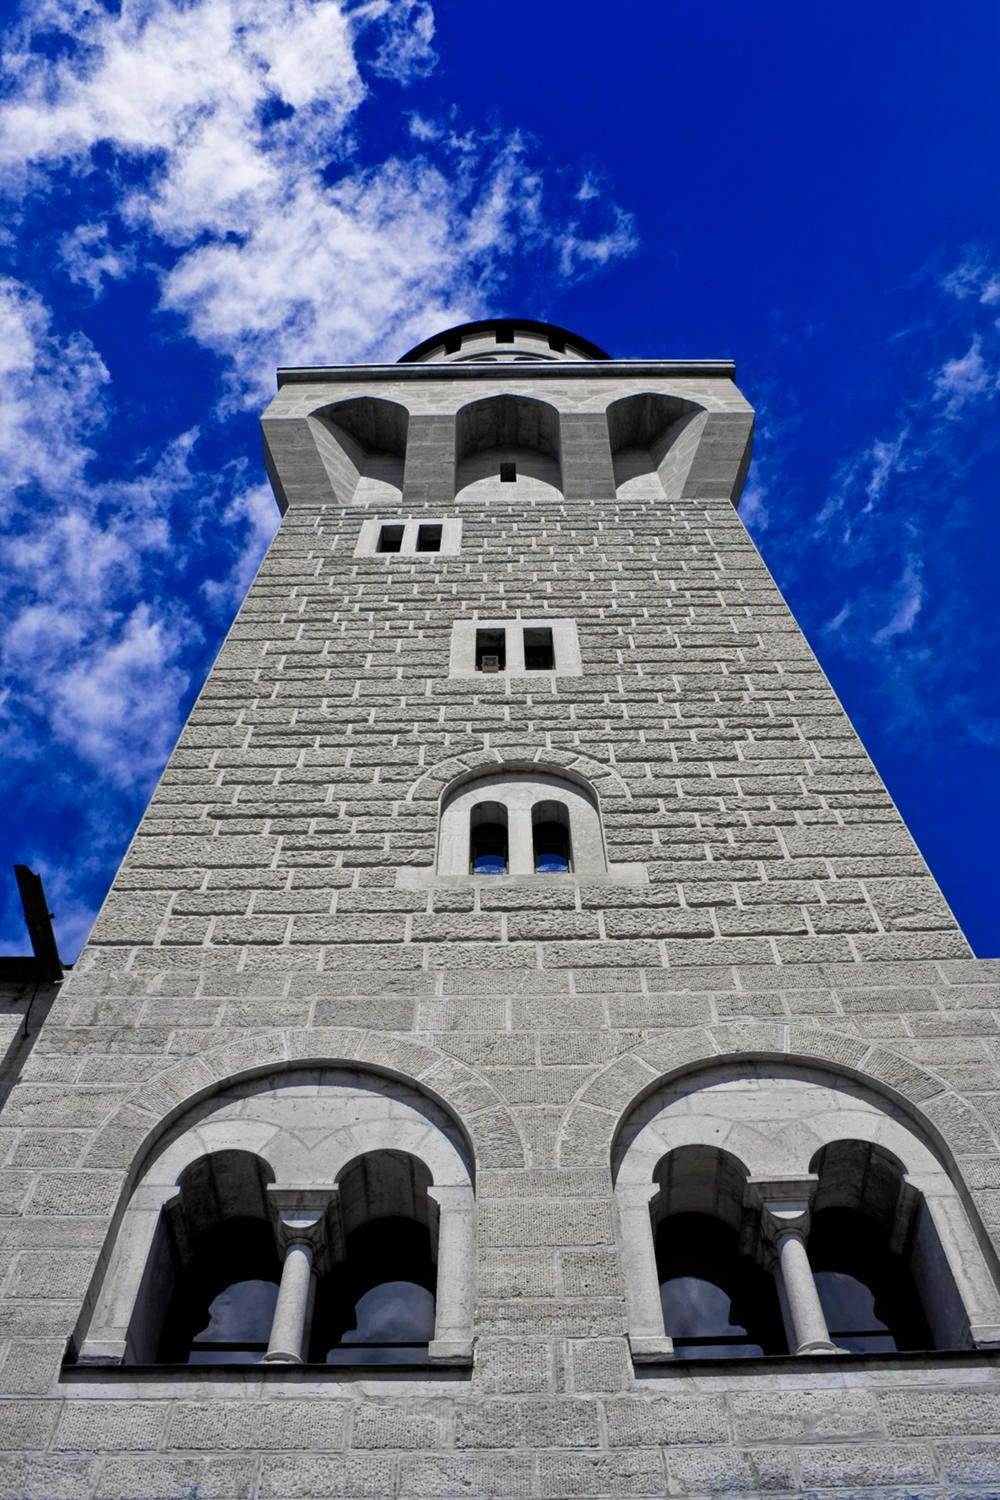 Neuschwanstein Tower. Credit Ιακώβ